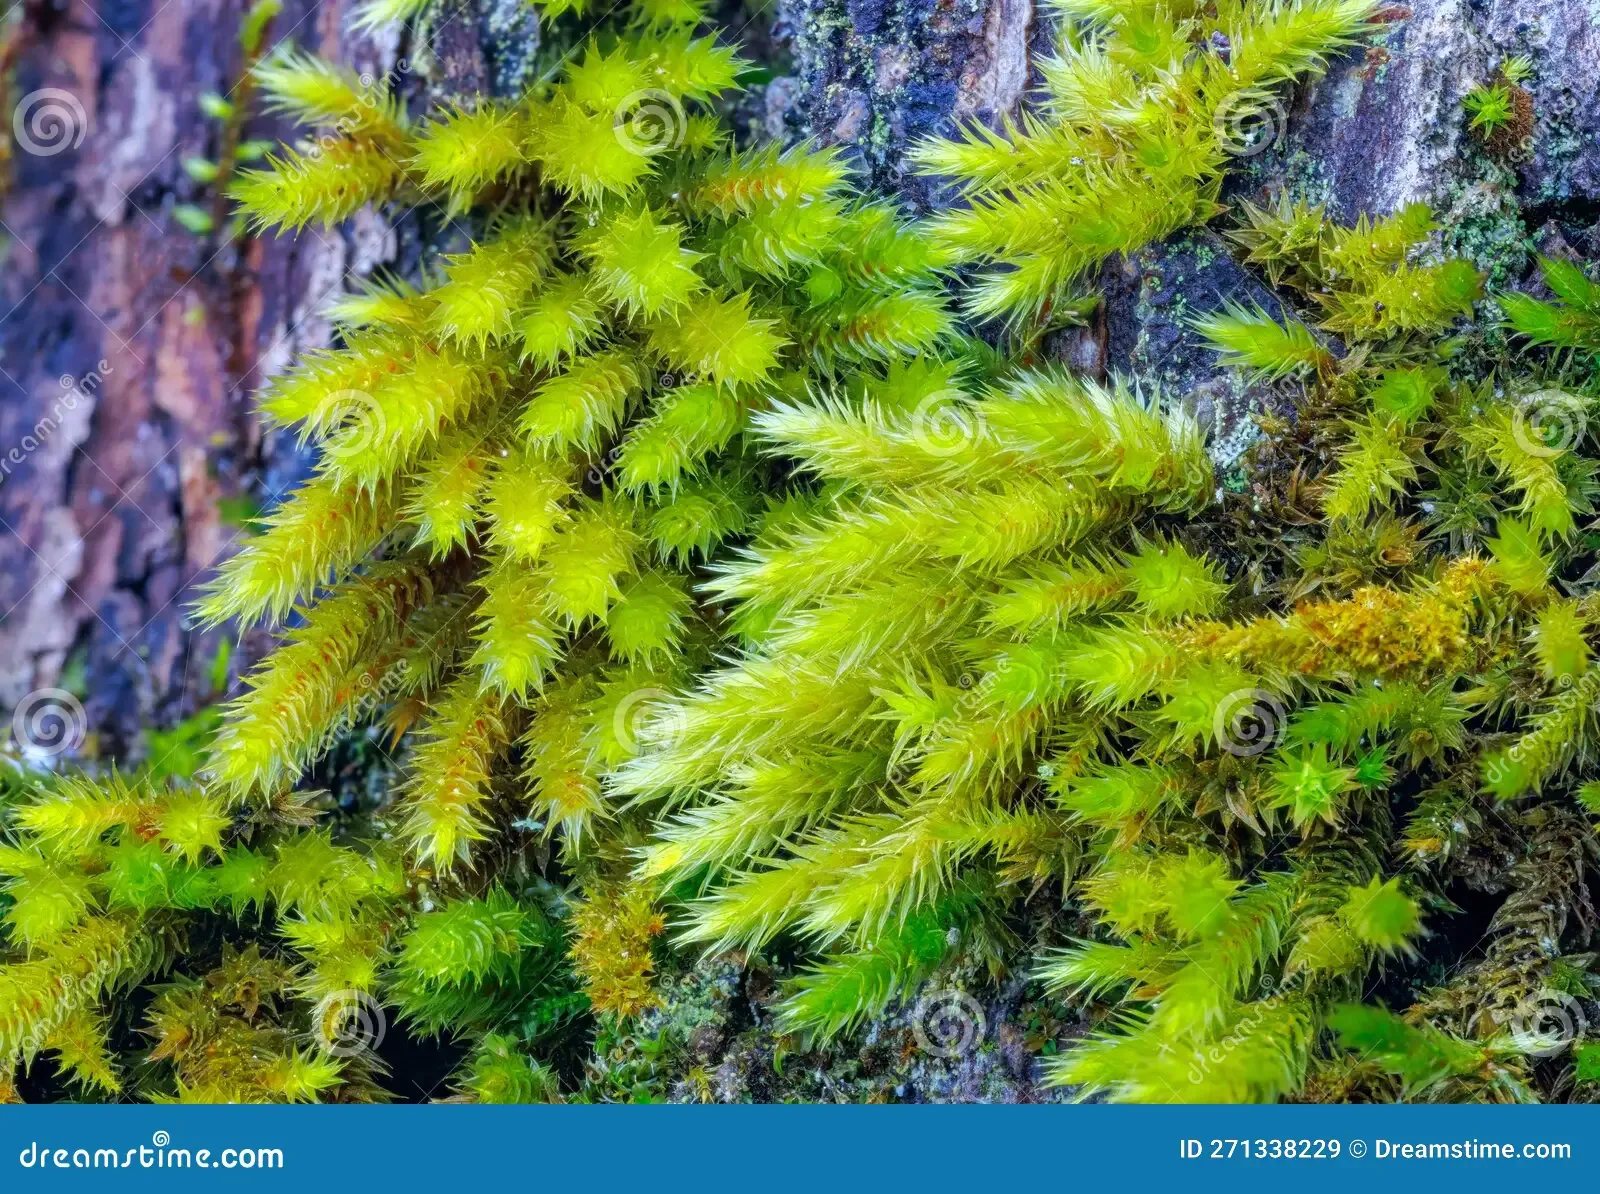 moss-texture-fresh-green-sharp-271338229.jpg